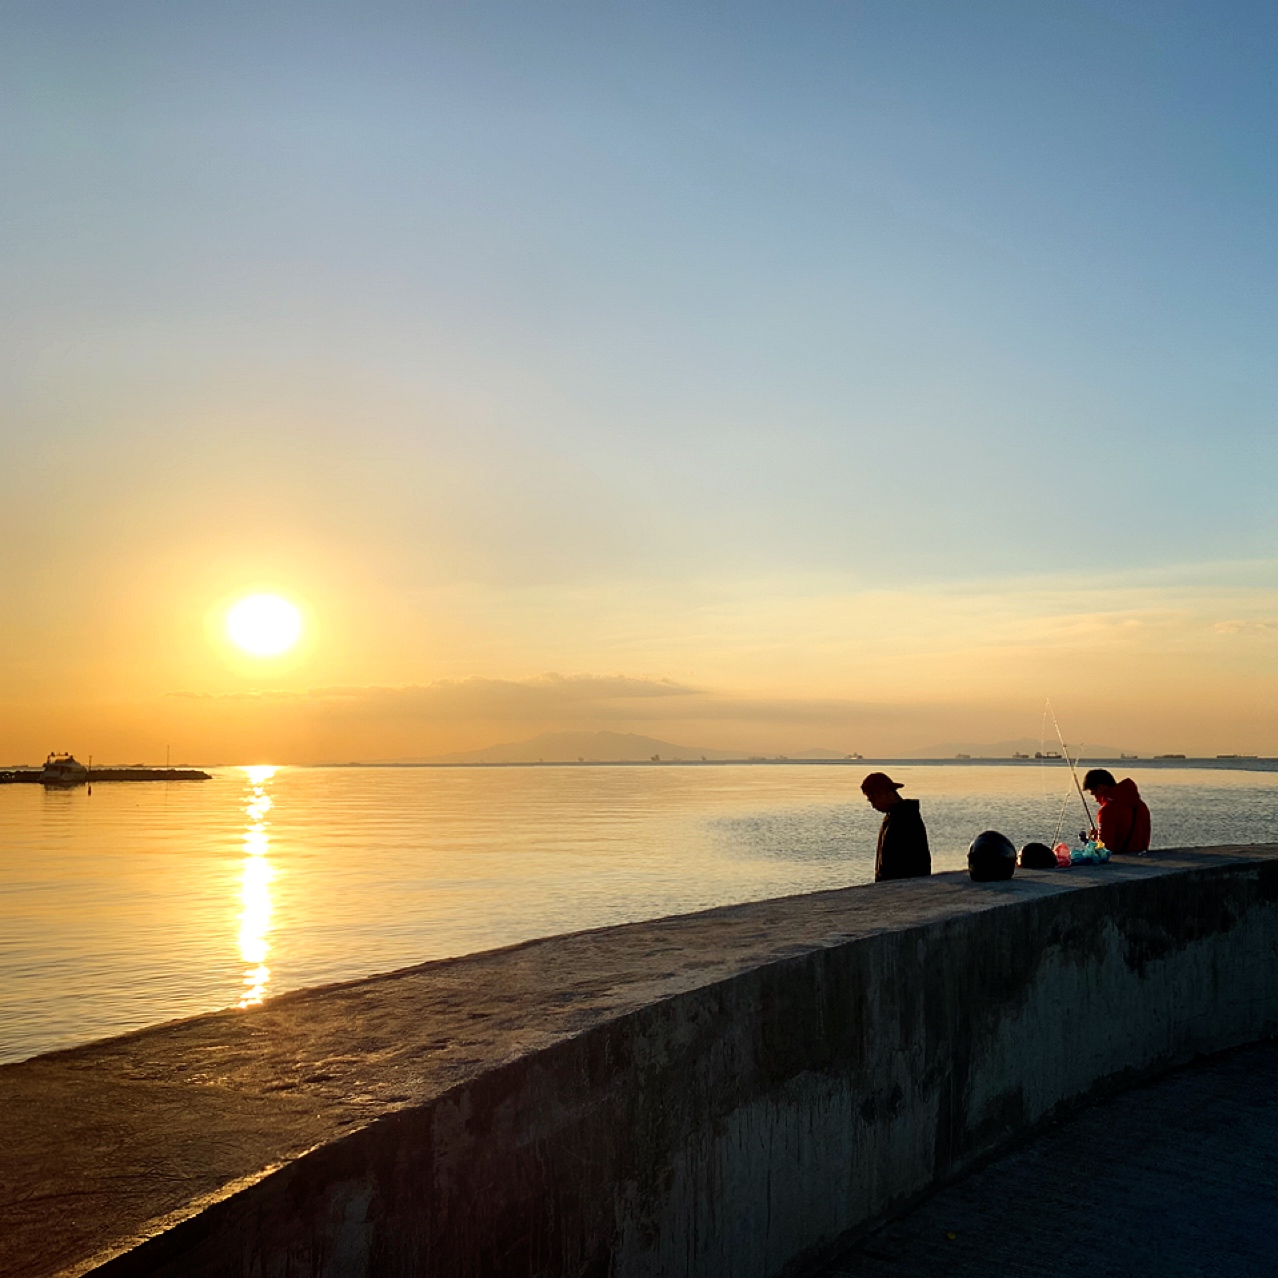 マニラ湾の夕日といえば世界三大夕焼けの一つ